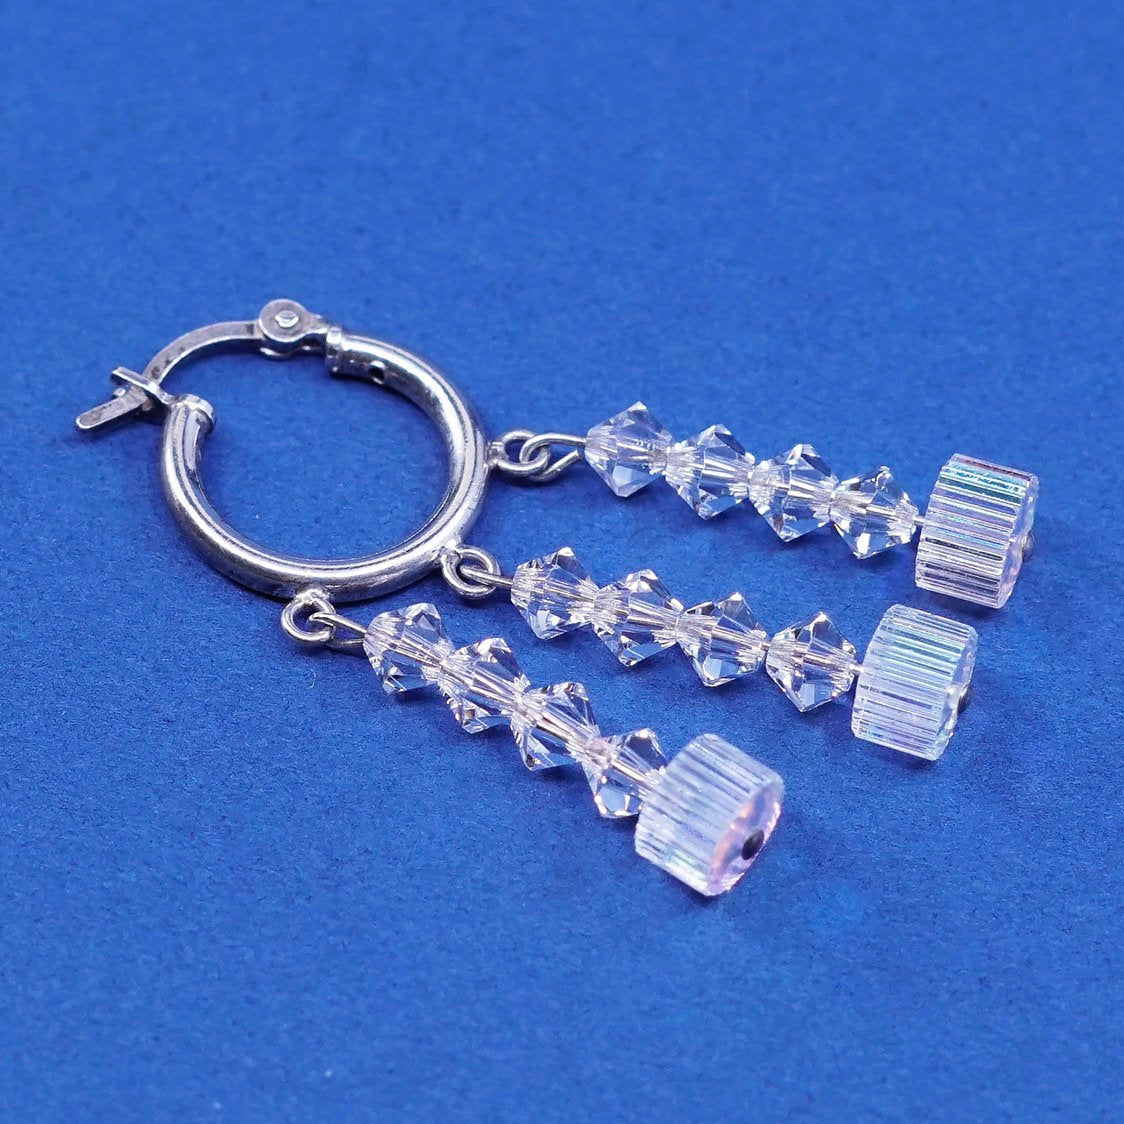 0.5", Sterling silver handmade earrings, 925 hoops w/ crystal bead dangle